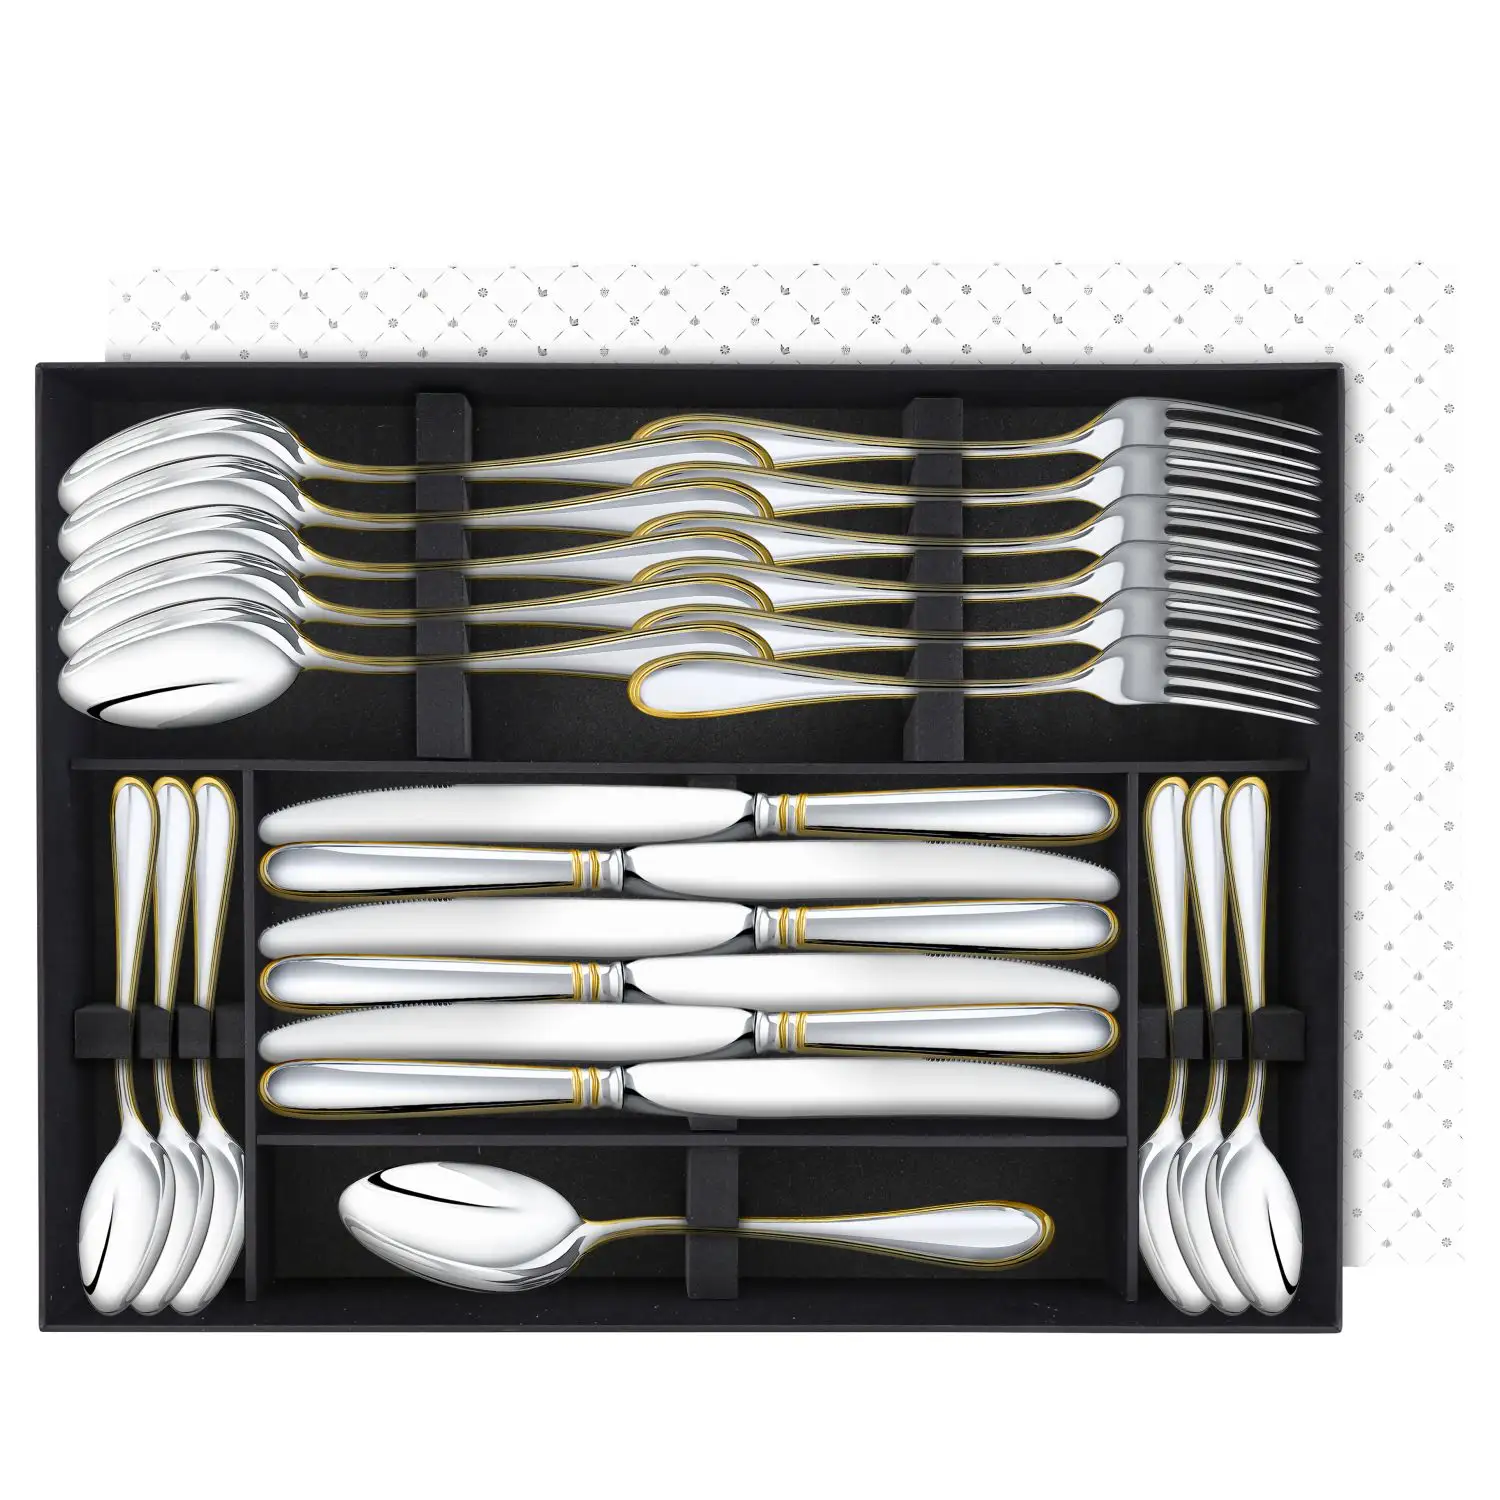 Набор столовый Капелька: вилка, ложка, нож, чайная ложка посеребренный с позолотой, на 6 персон набор столовый метелица вилка ложка нож чайная ложка посеребренный с позолотой набор на 6 персон